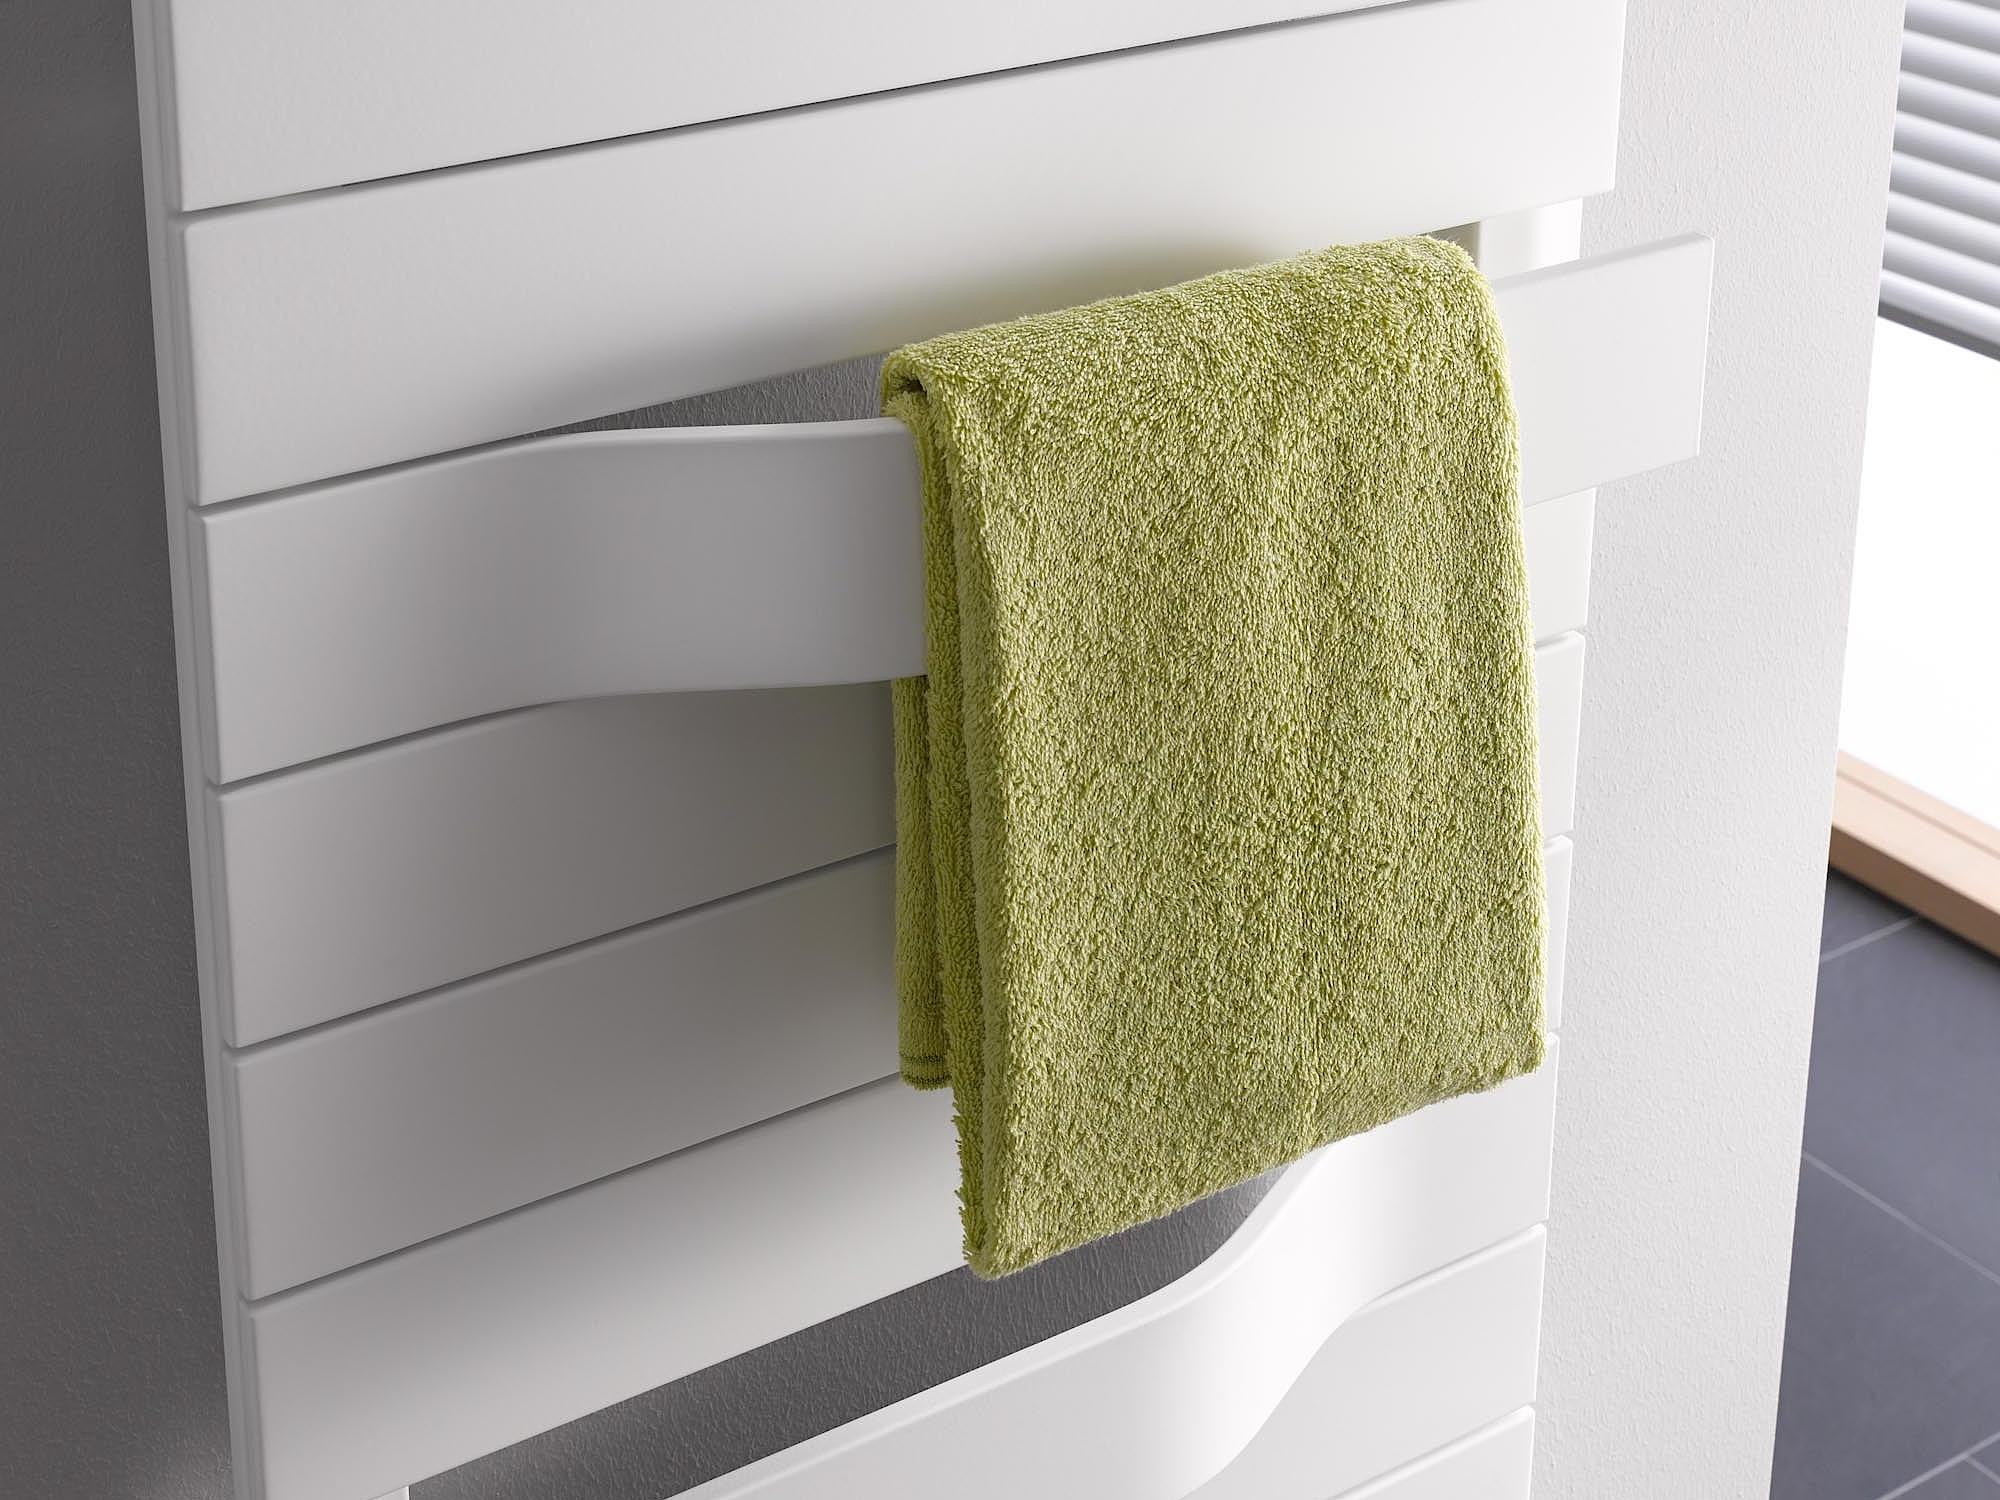 Kermi Tabeo dizaino radiatoriai - rankšluosčių džiovintuvai su dinamiškai iš paviršiaus iškylančiomis rankšluosčių kabyklomis.